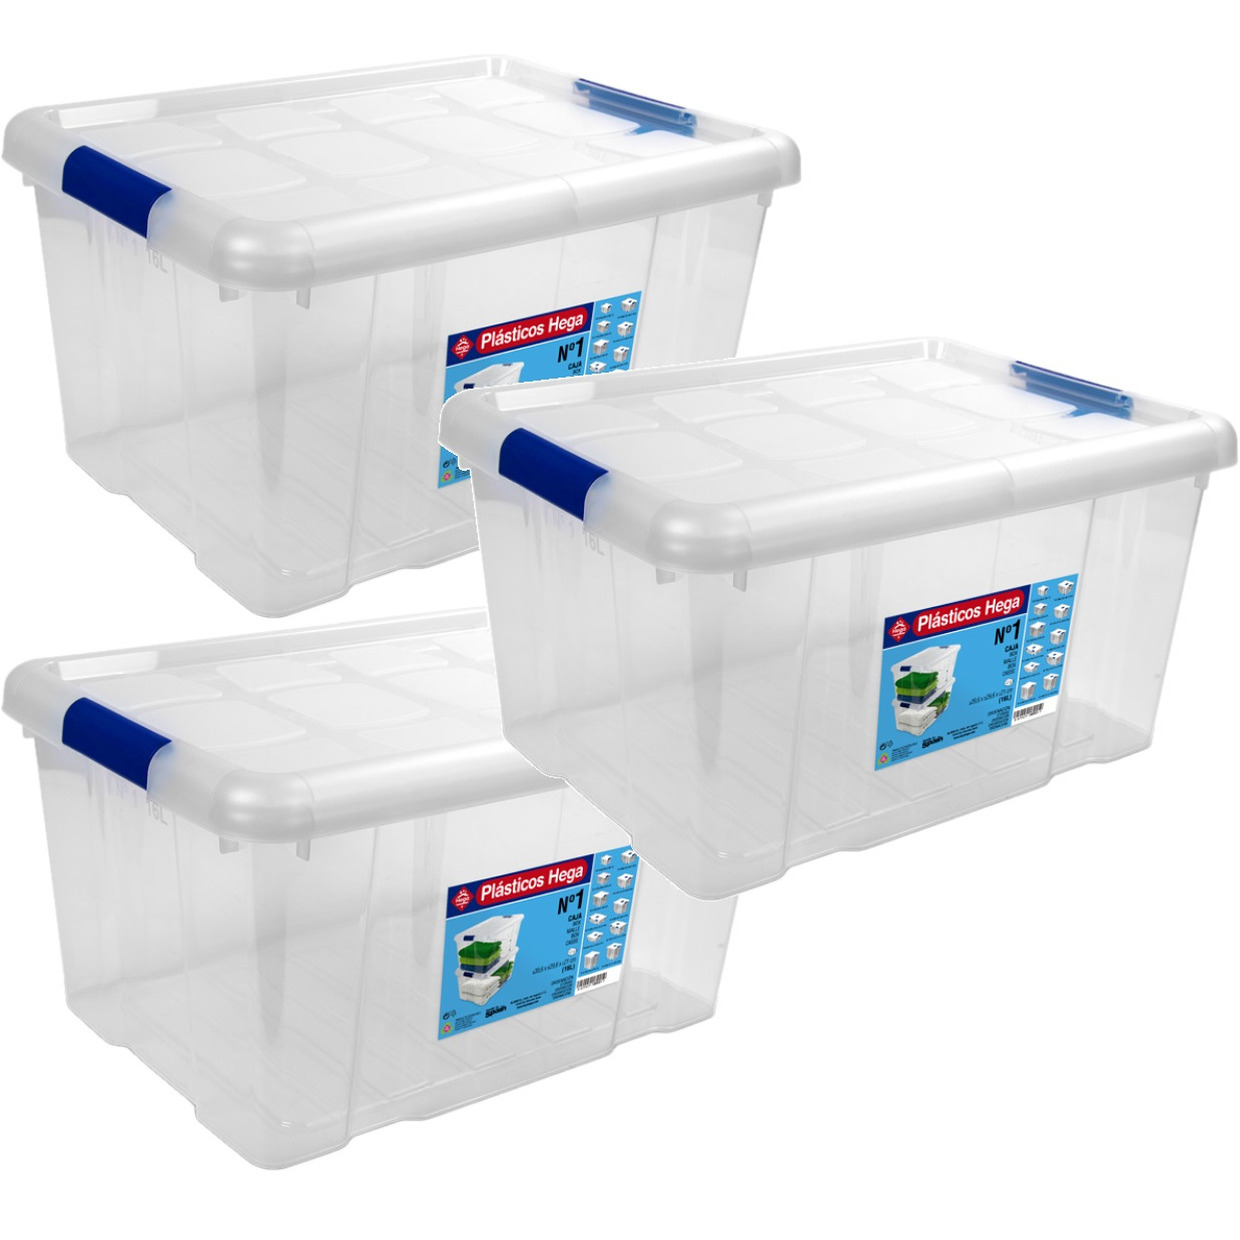 8x Opbergboxen-opbergdozen met deksel 16 liter kunststof transparant-blauw